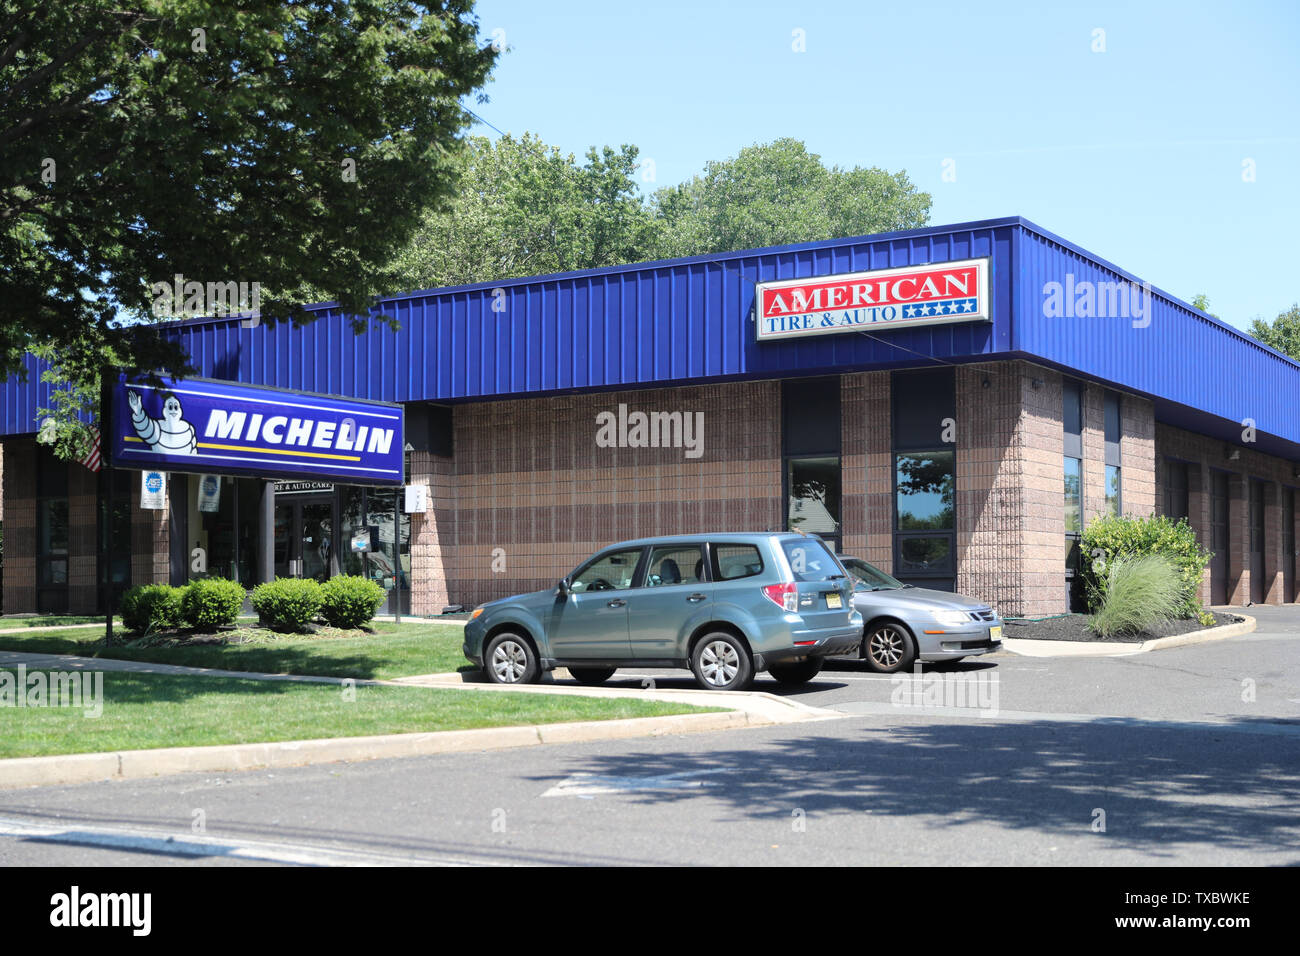 Princeton New Jersey, USA, June 23, 2019: American Tire & Auto Care: Central NJ Tires & NJ Auto Repair Stock Photo